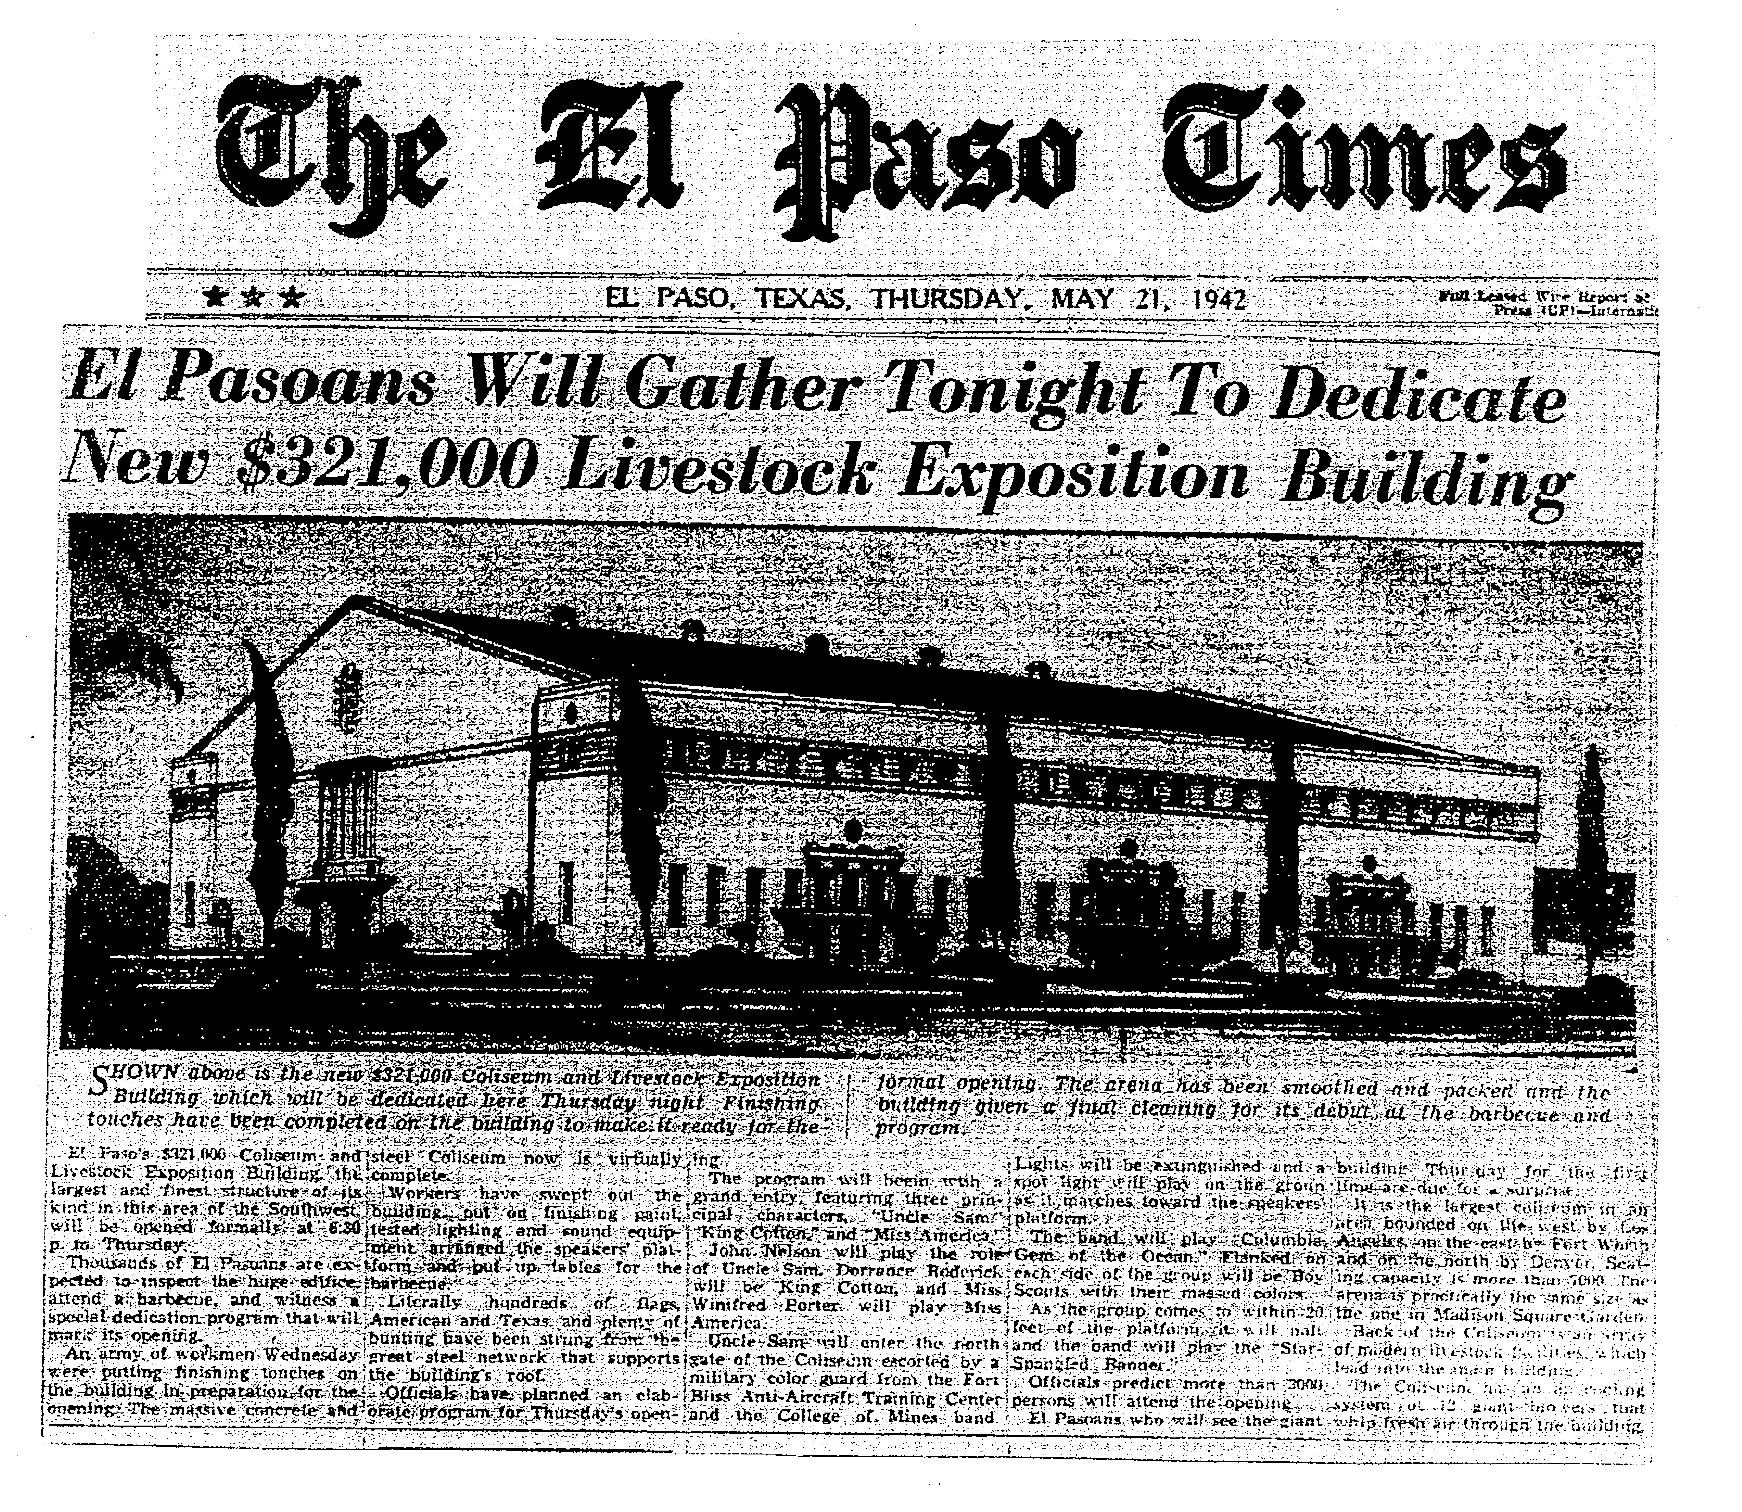 Article El Paso Times 5.21.1942